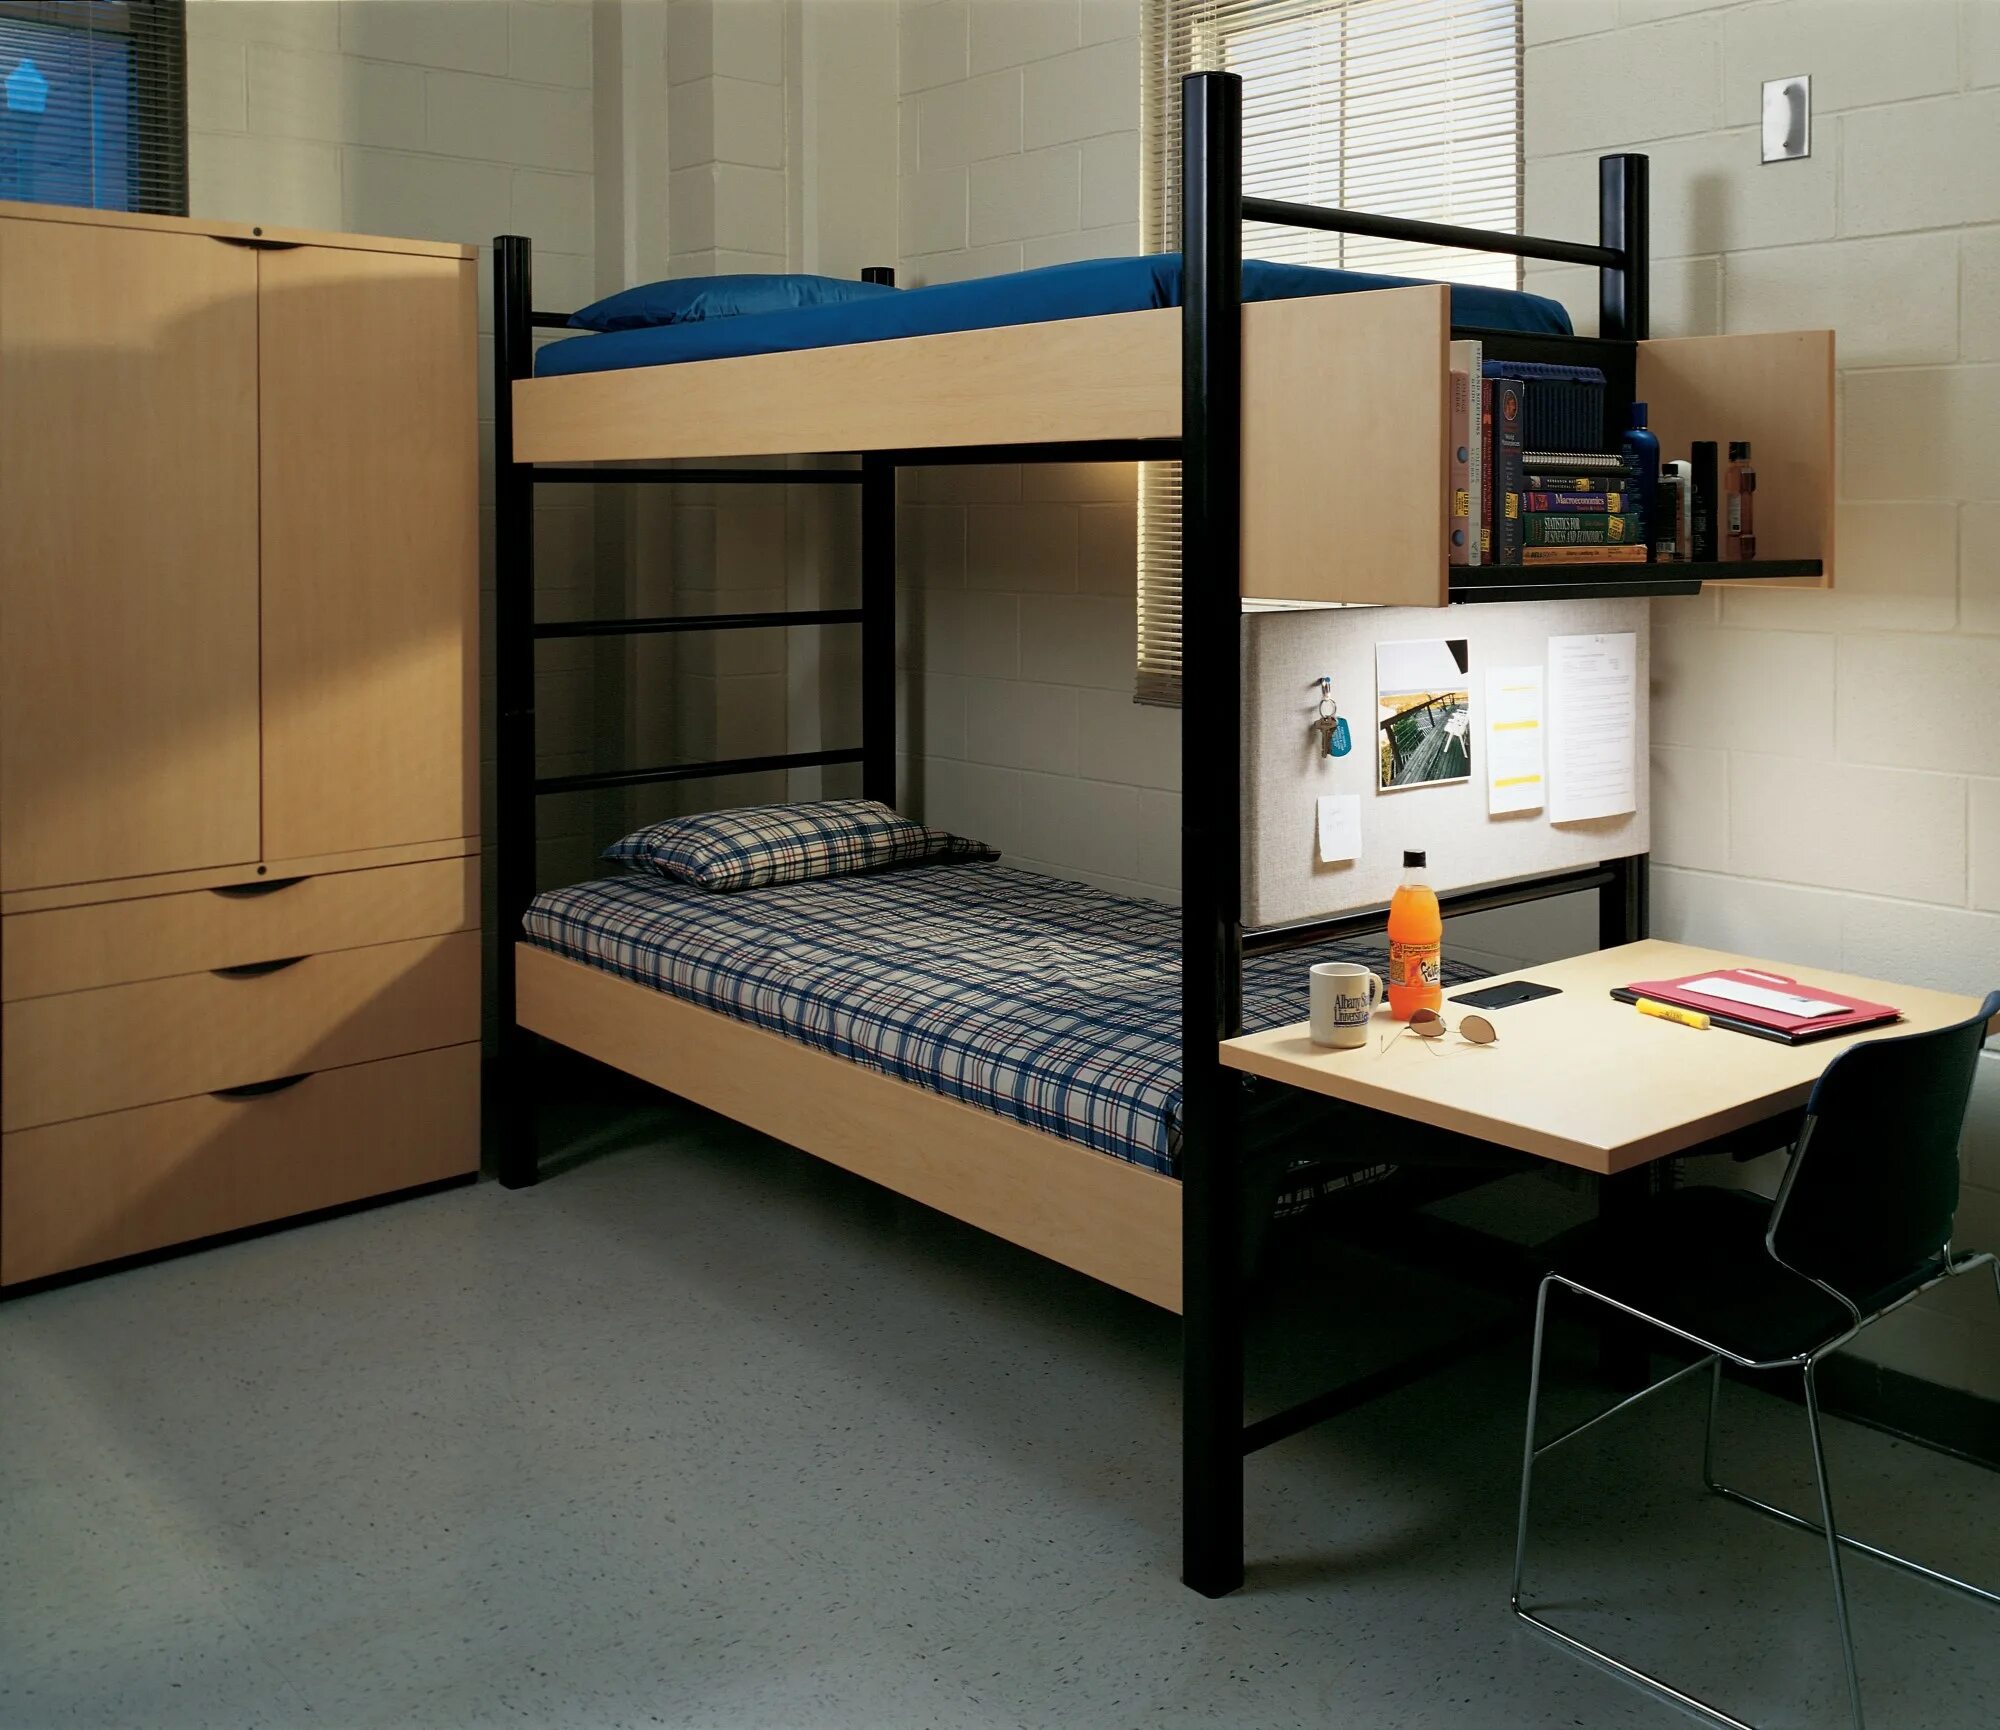 Двухэтажная кровать в общаге. Кровать двухъярусная для общежития. Двухъярусная кровать для студентов. Двухуровневая кровать в общагу.